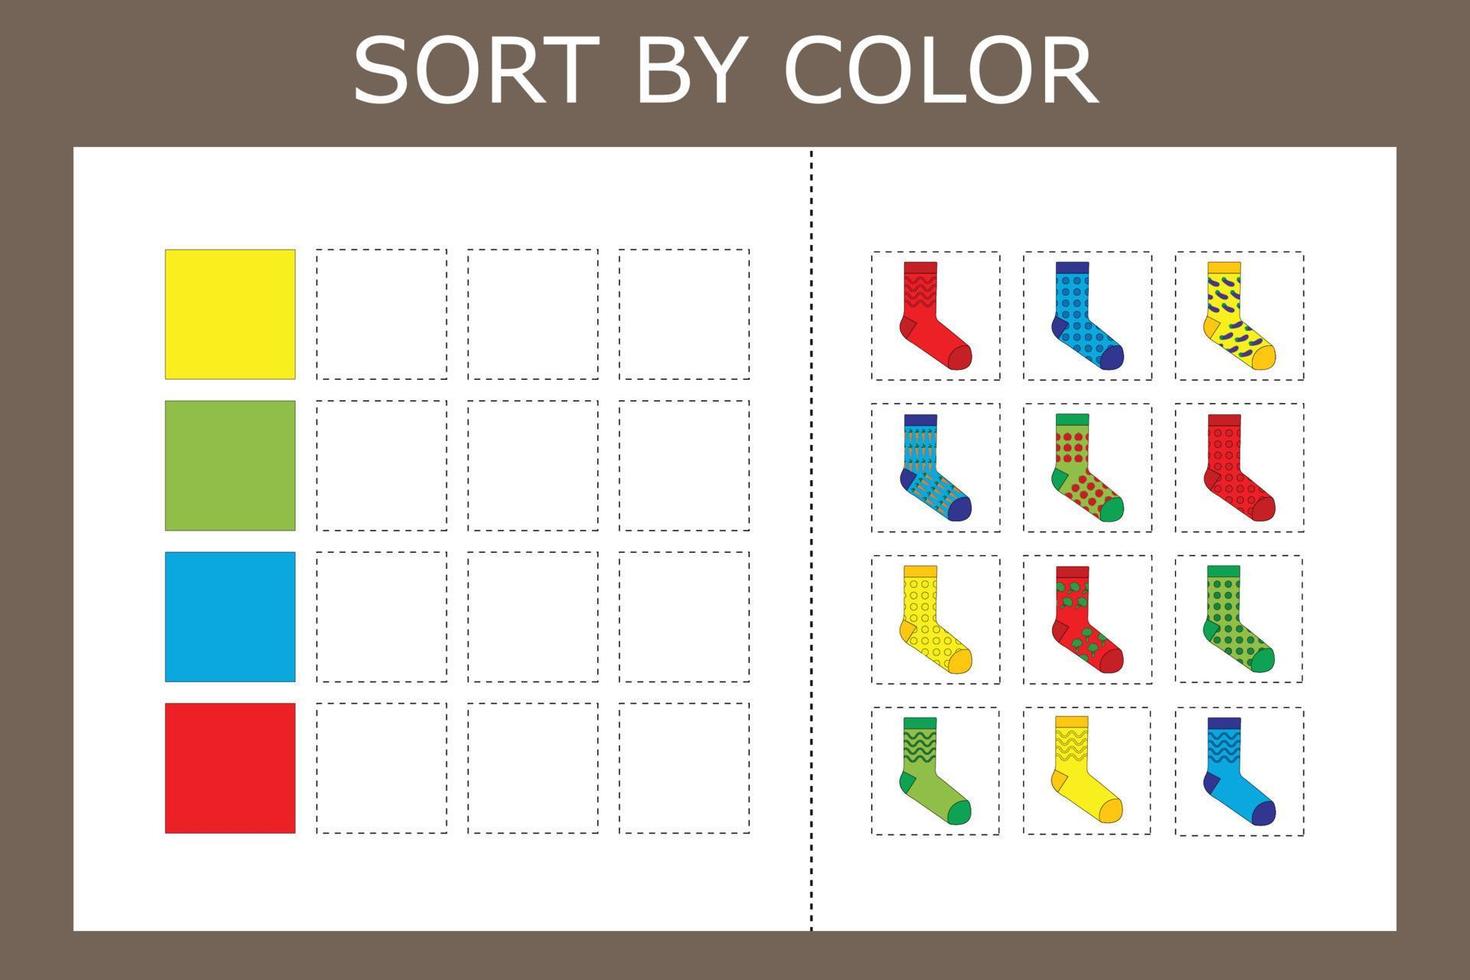 sortera strumpor efter färg. logikspel för barn. vektor